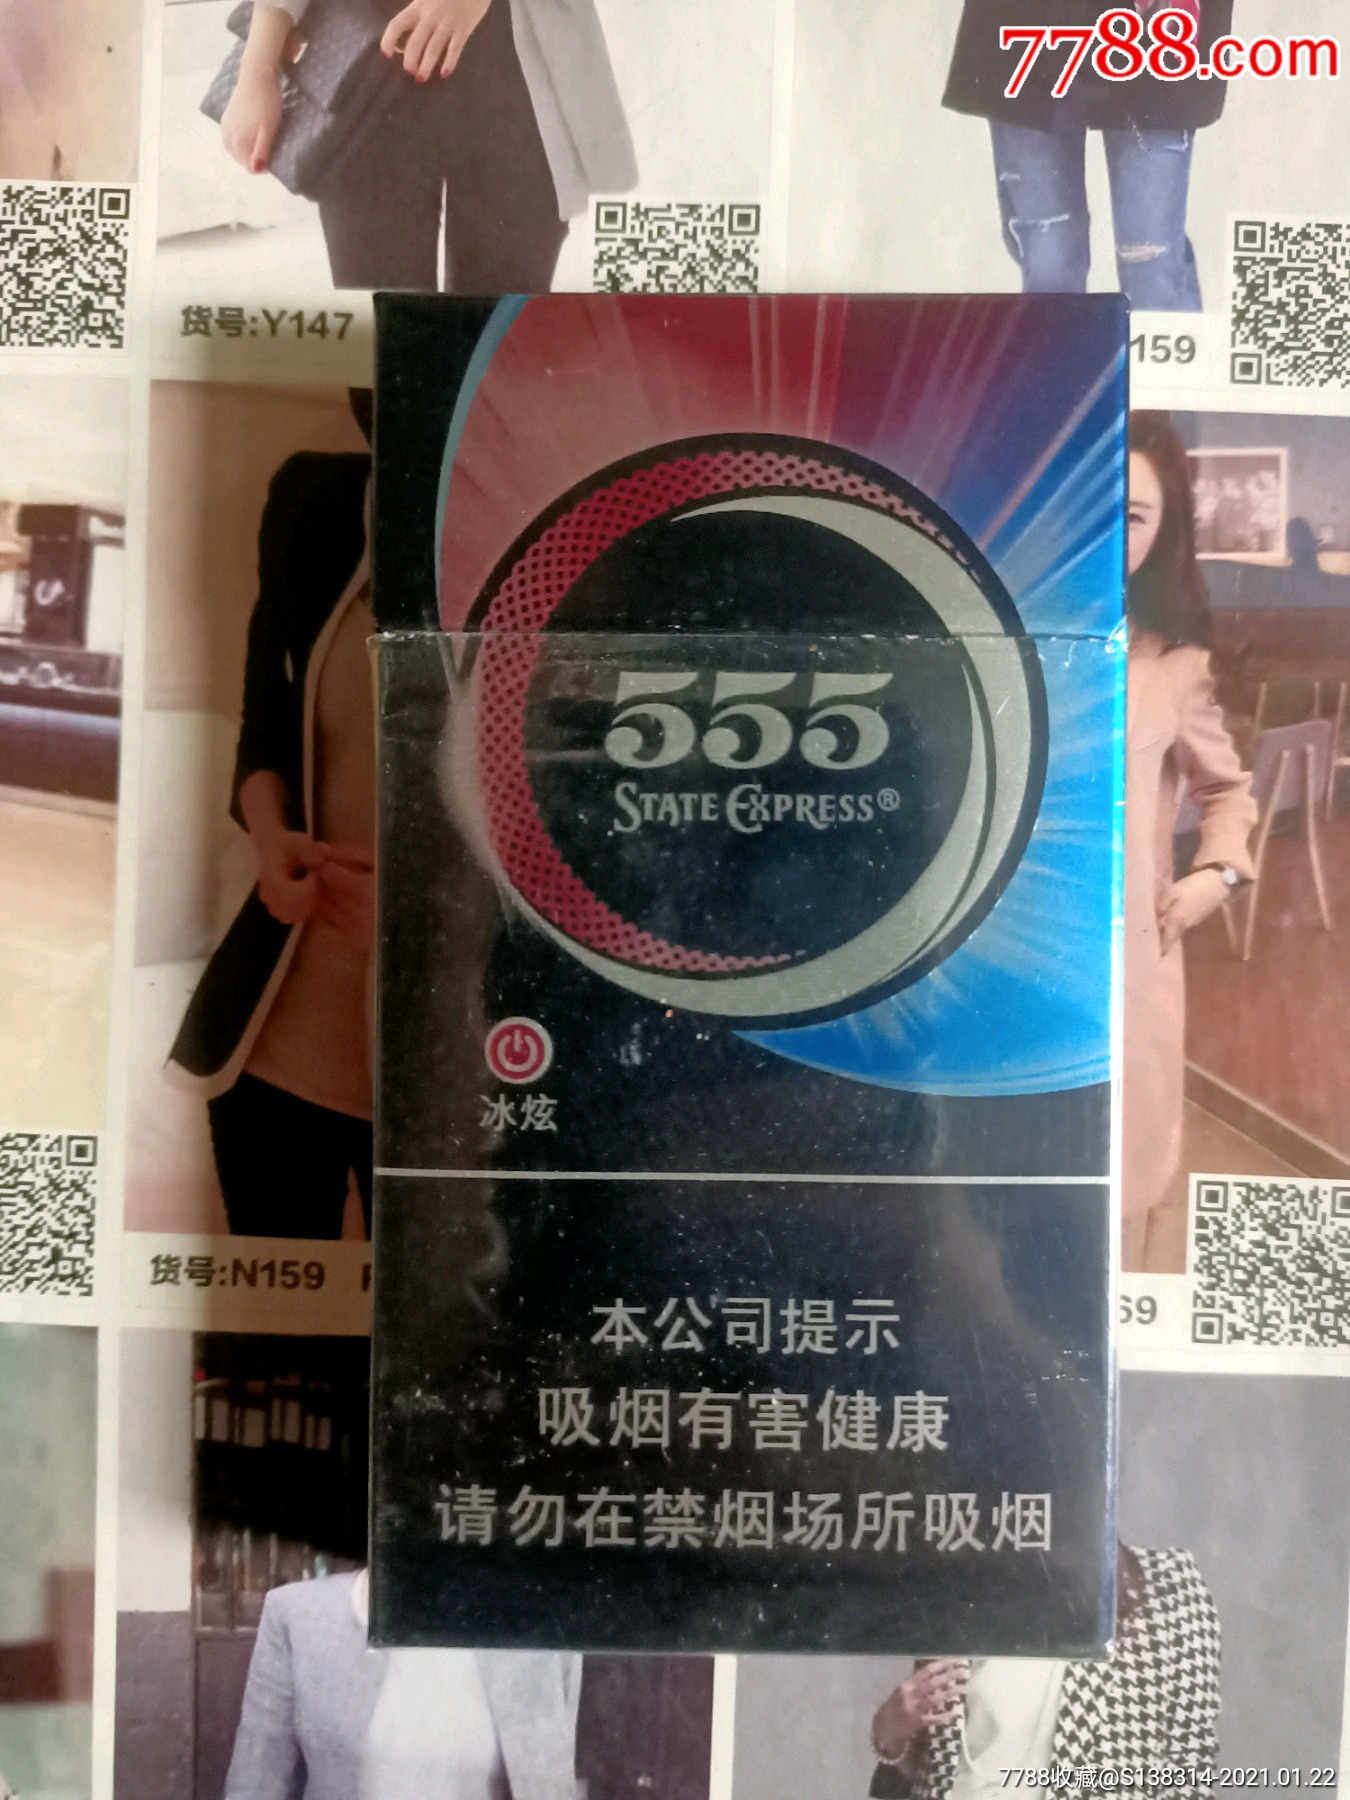 555香烟价格及图片国际图片